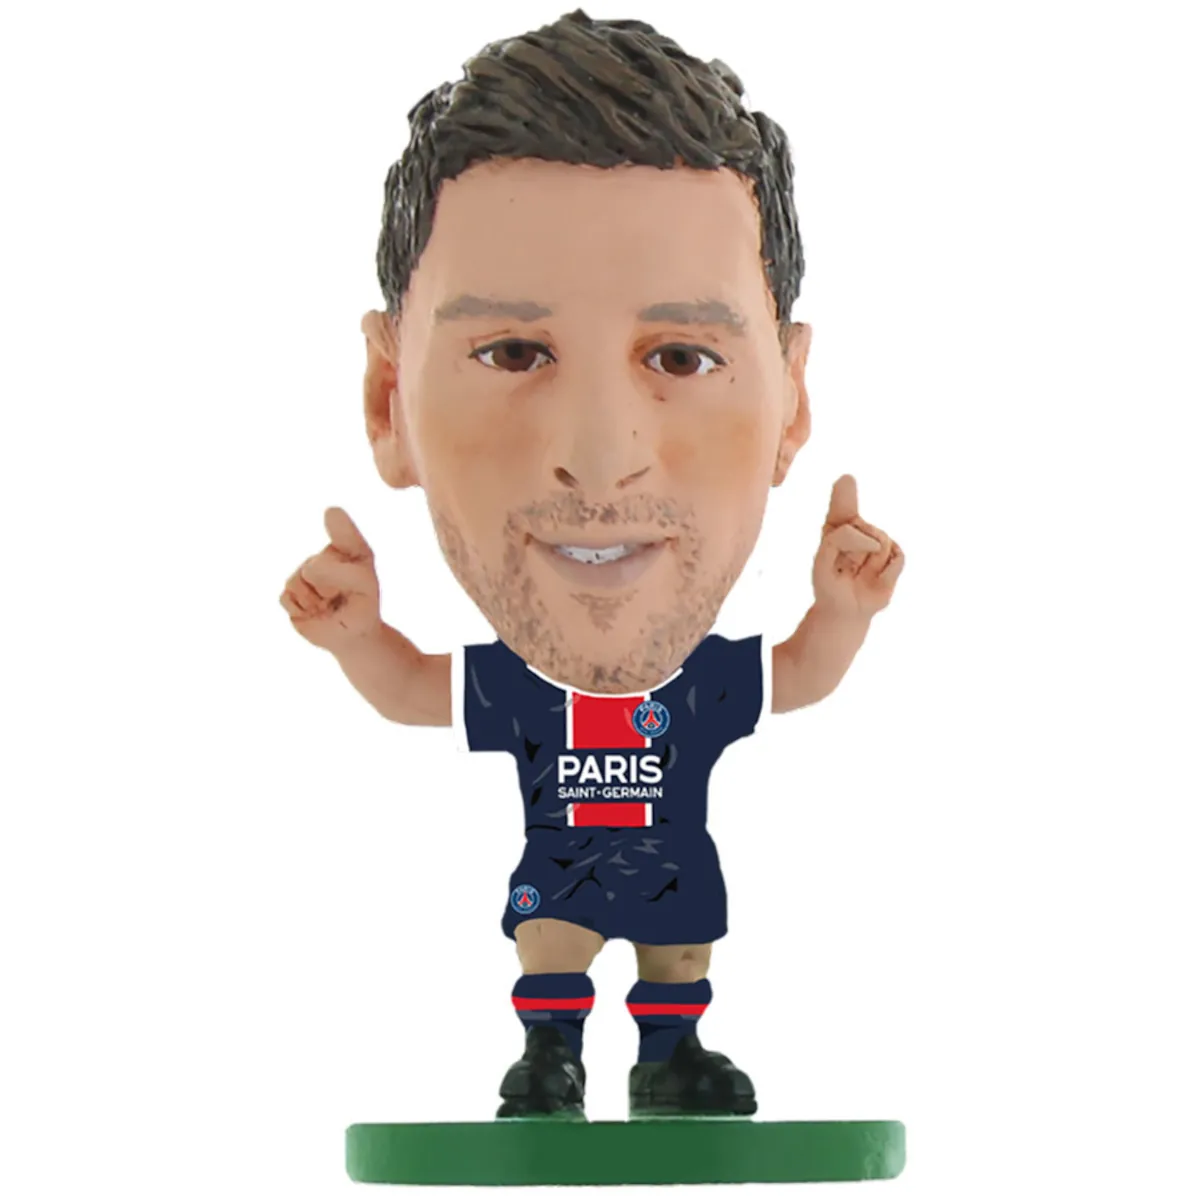 TM-00853 Paris Saint-Germain FC SoccerStarz Collectable Figure - Lionel Messi